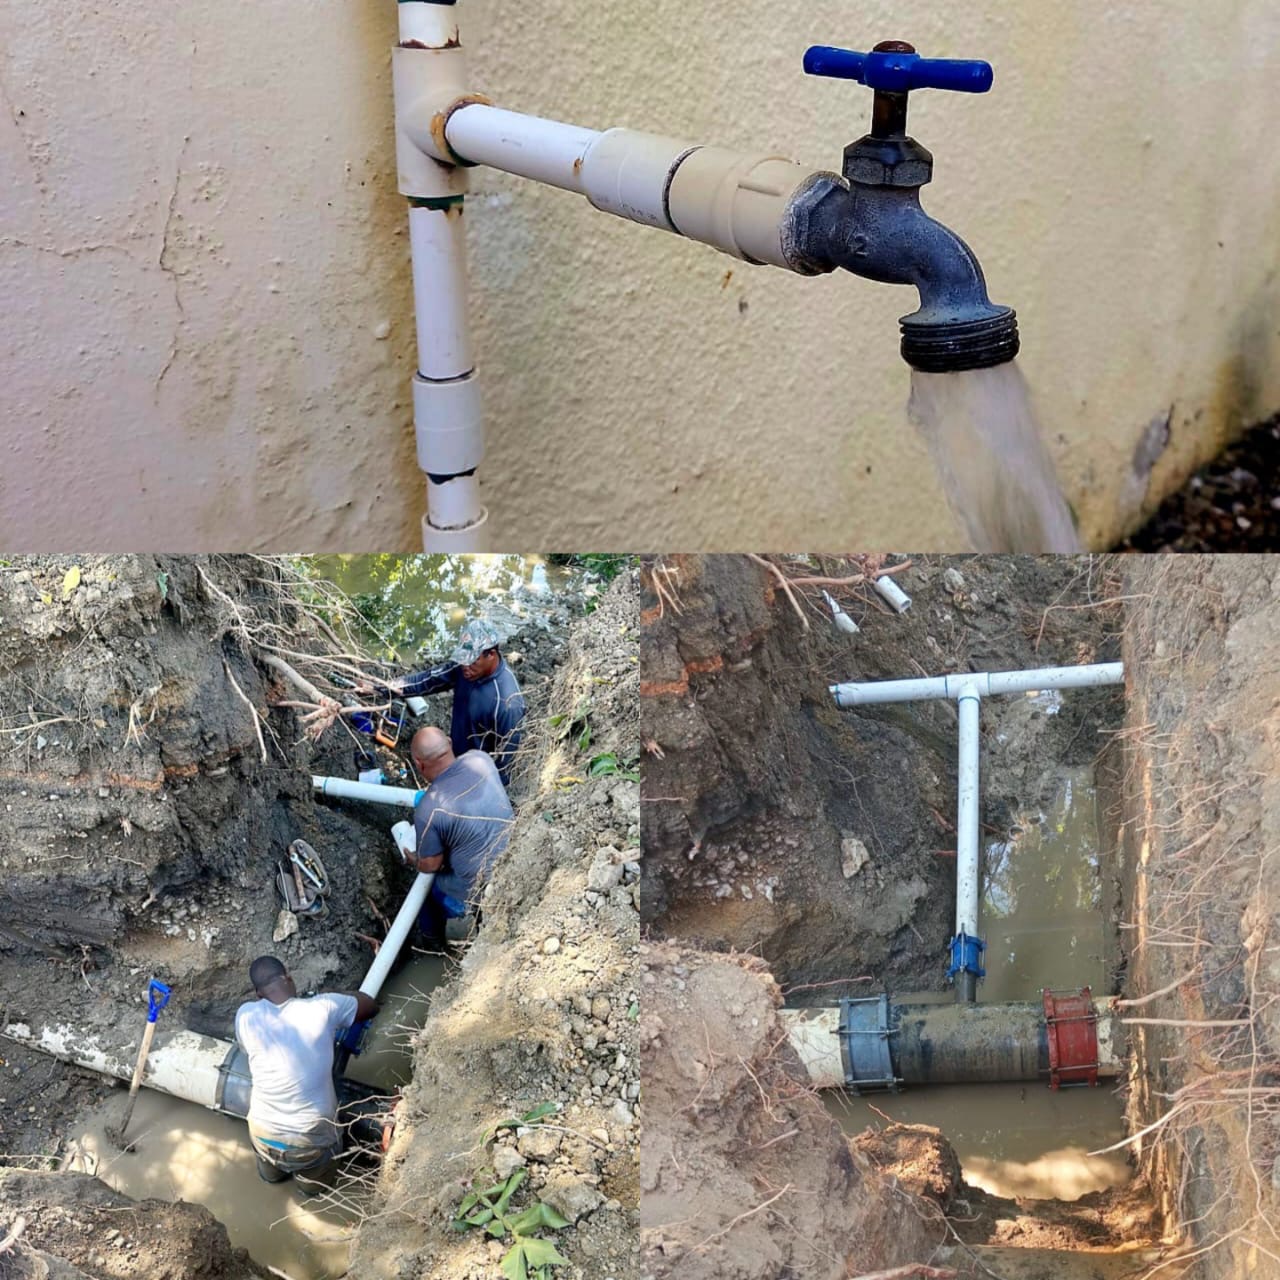   CORAAPPLATA restablece suministro de agua en casco urbano de Luperón 